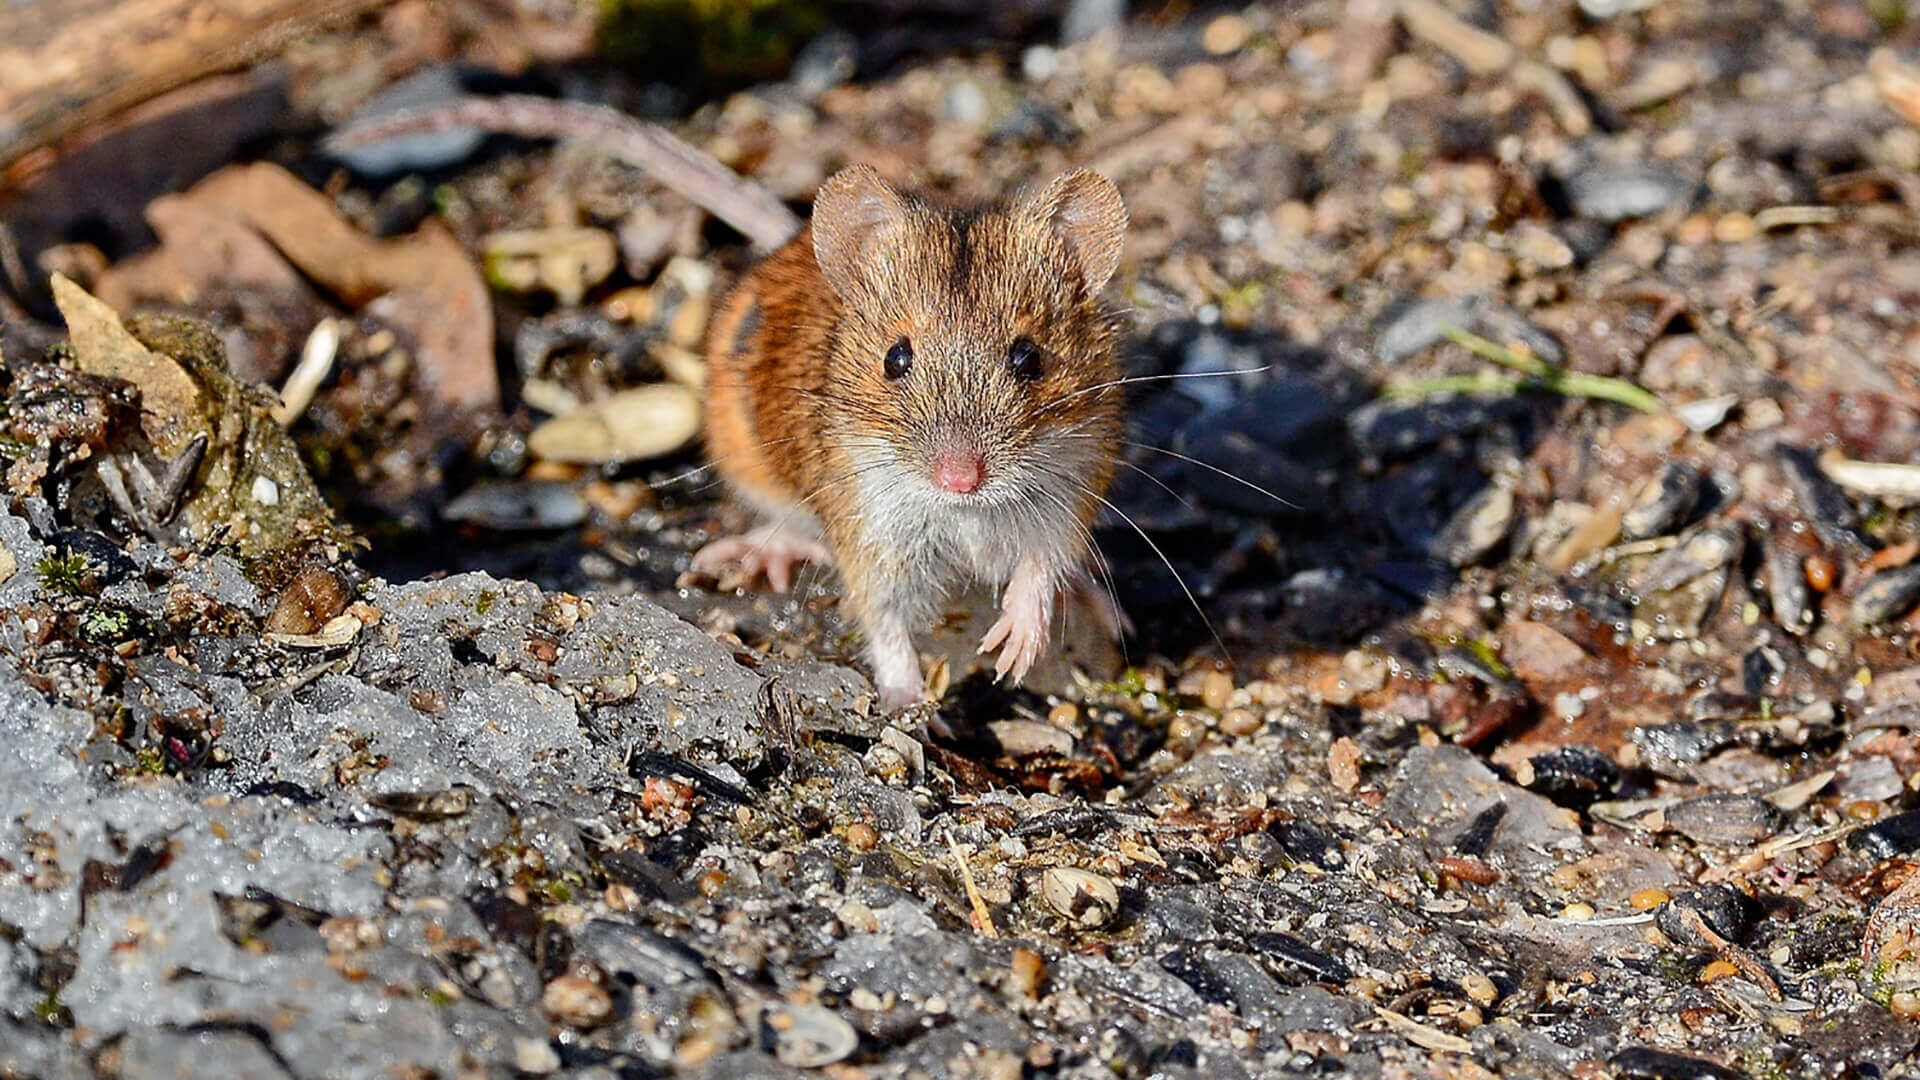 8 гуманных способов, как избавиться от мышей и крыс в дачном доме